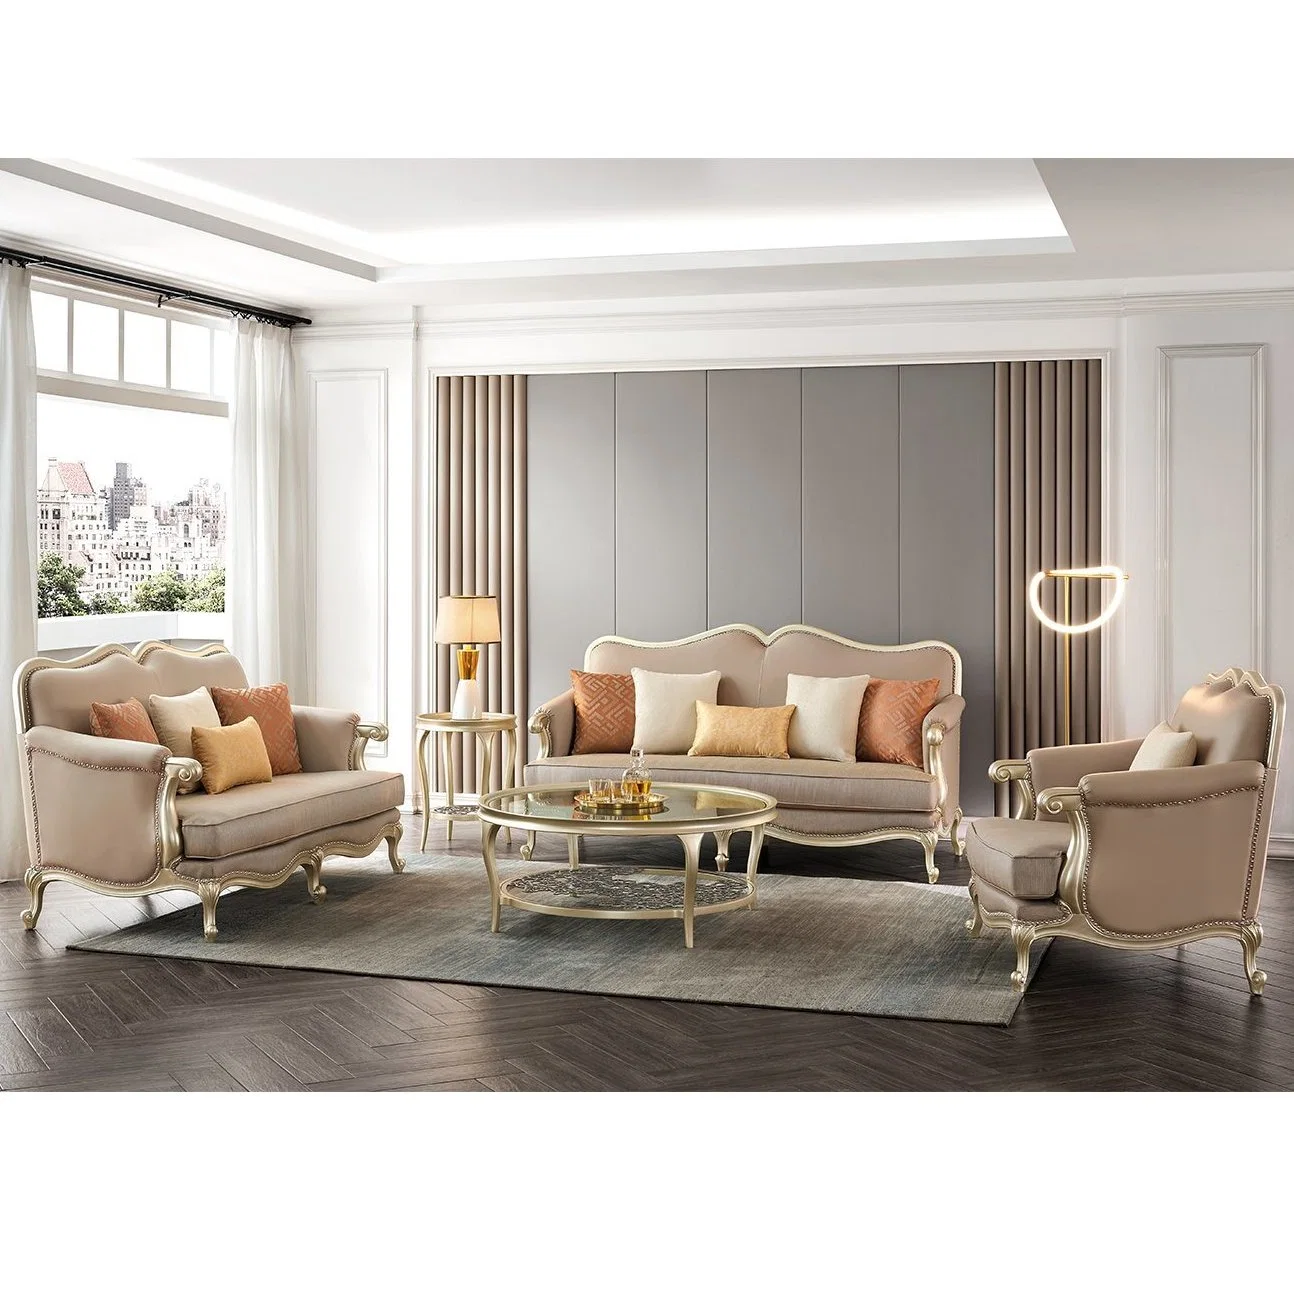 Современная роскошь и деревянные дома кушетки, вид в разрезе сидячих мест двойной кожаный диван в гостиной мебели